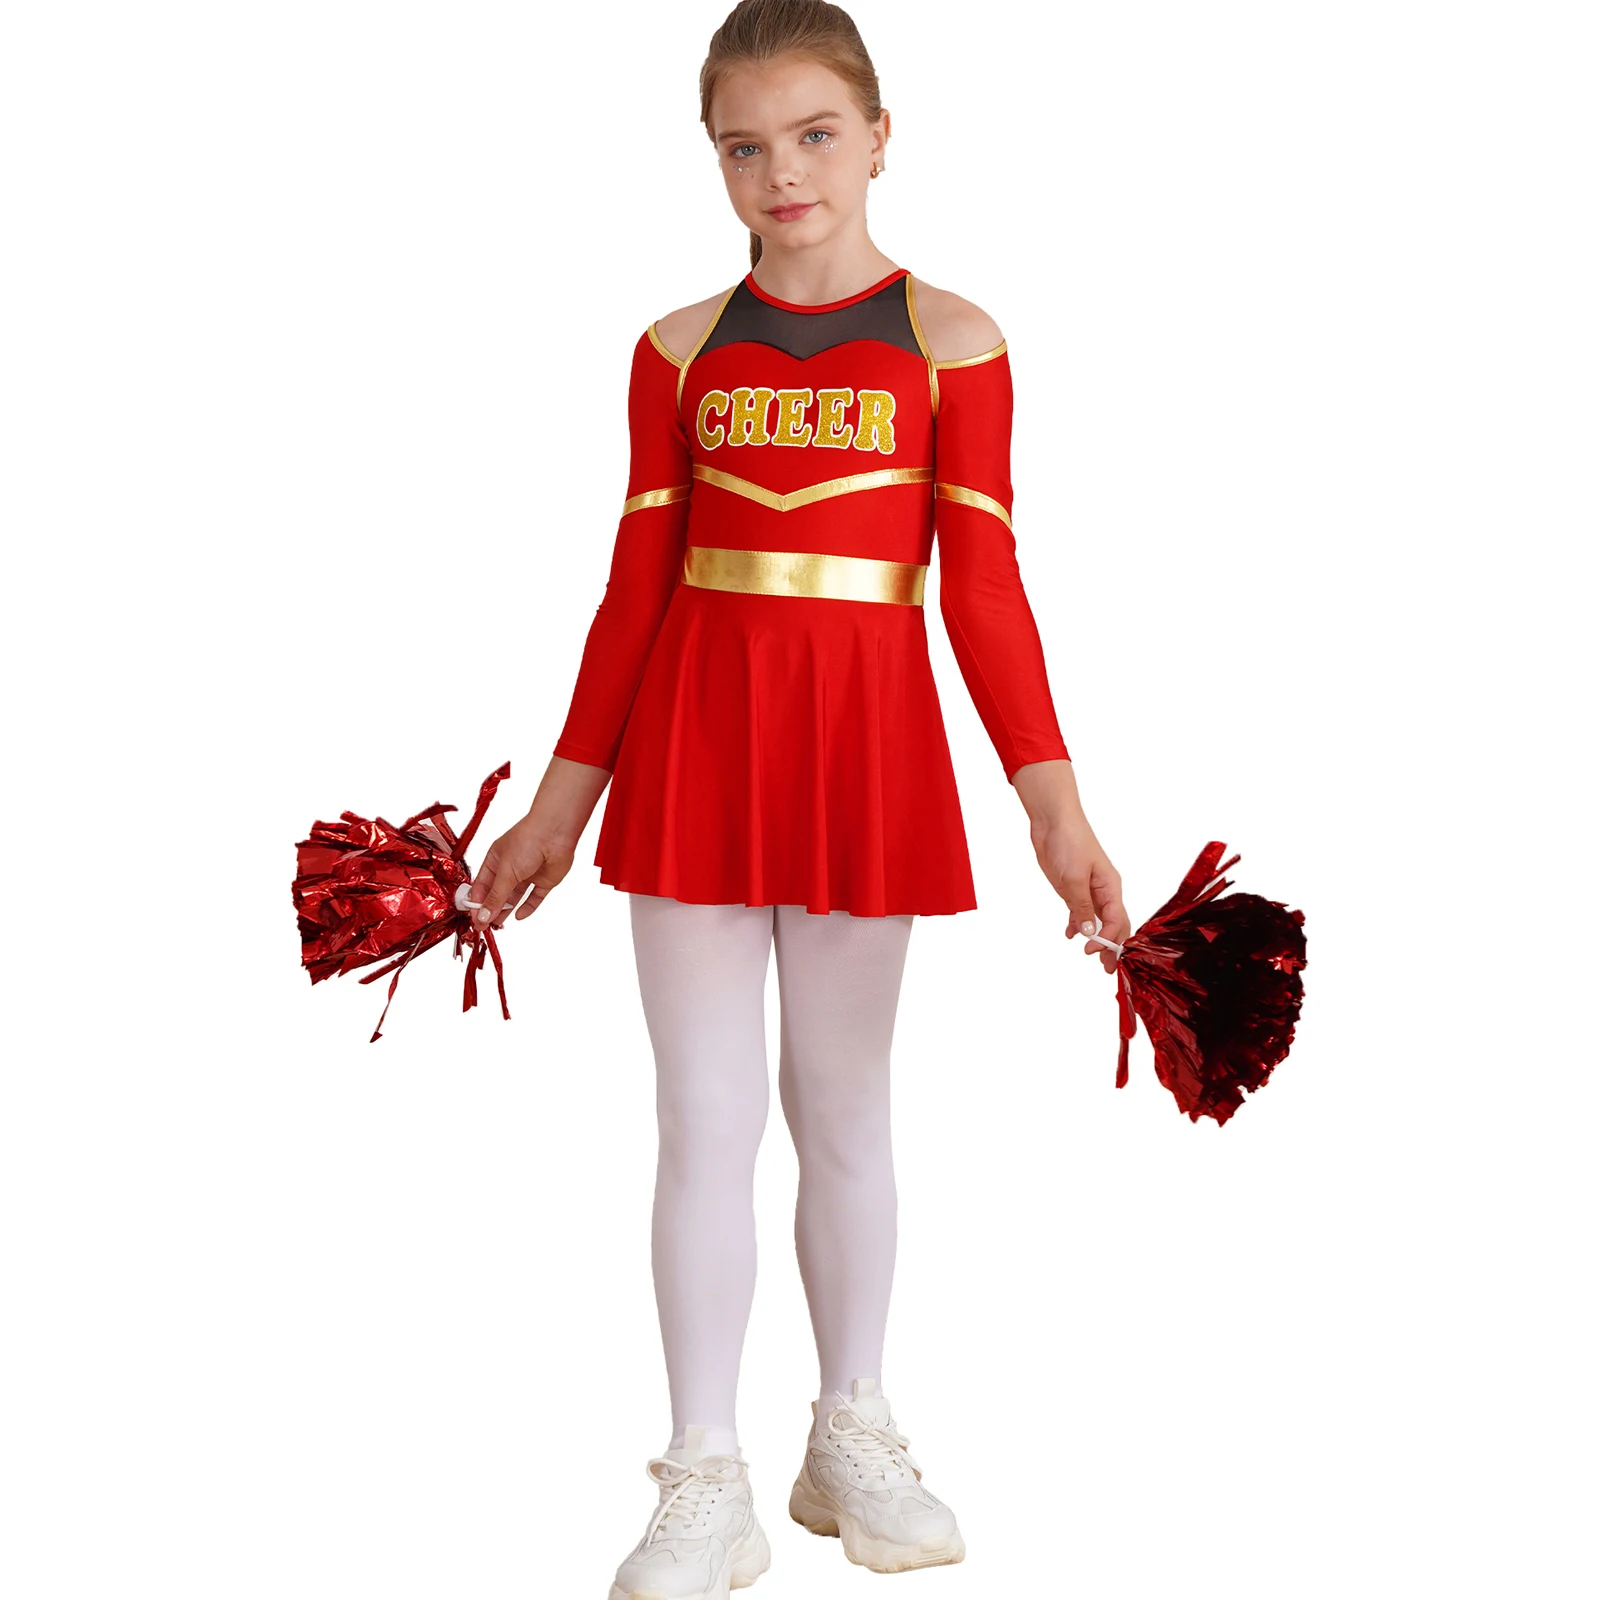 

Kids Girls Patchwork Cheerleading Dance Outfits Dress Letter Print Cold Shoulder Keyhole Back Long Sleeve Leotard Dresses Games